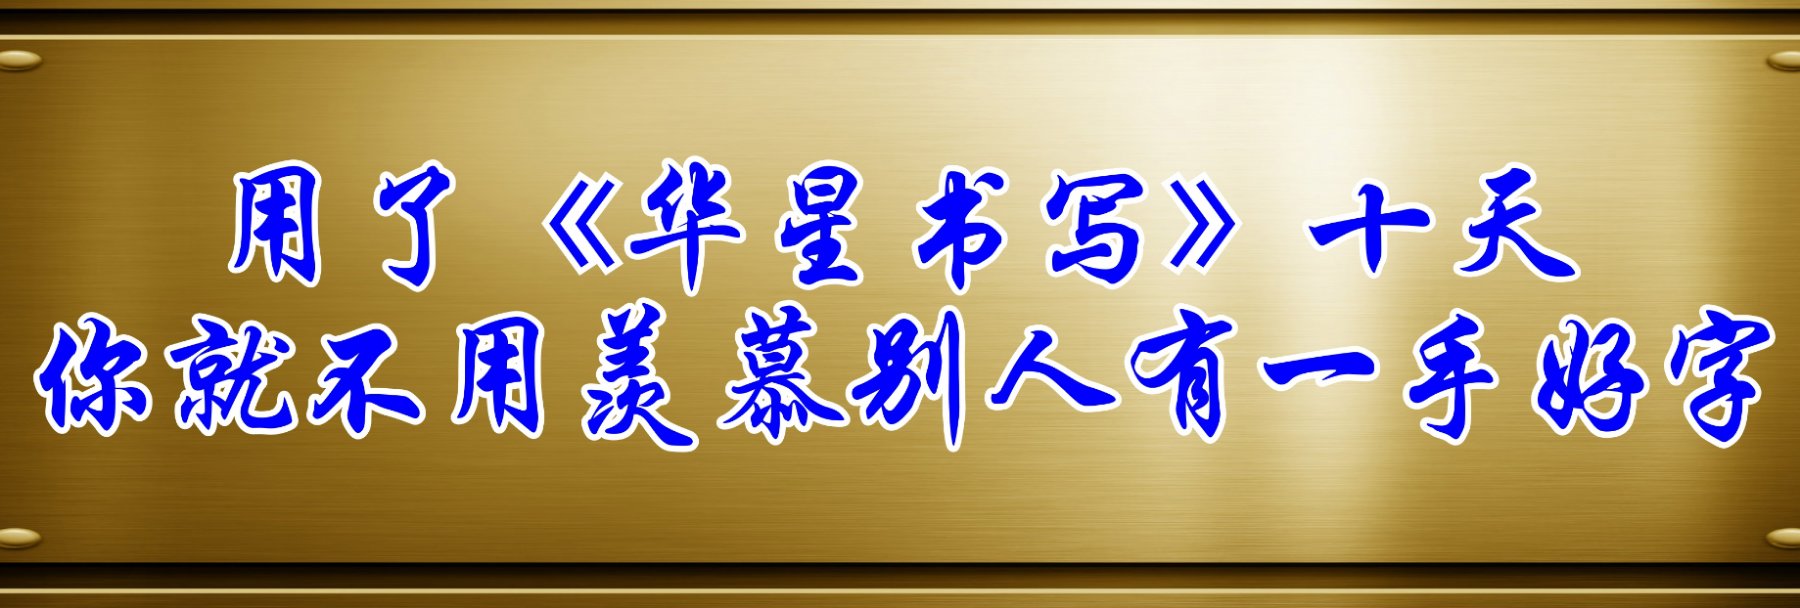 华星汉字书写全国招商|规范化汉字书写| 汉字书写教学|汉字书写训练